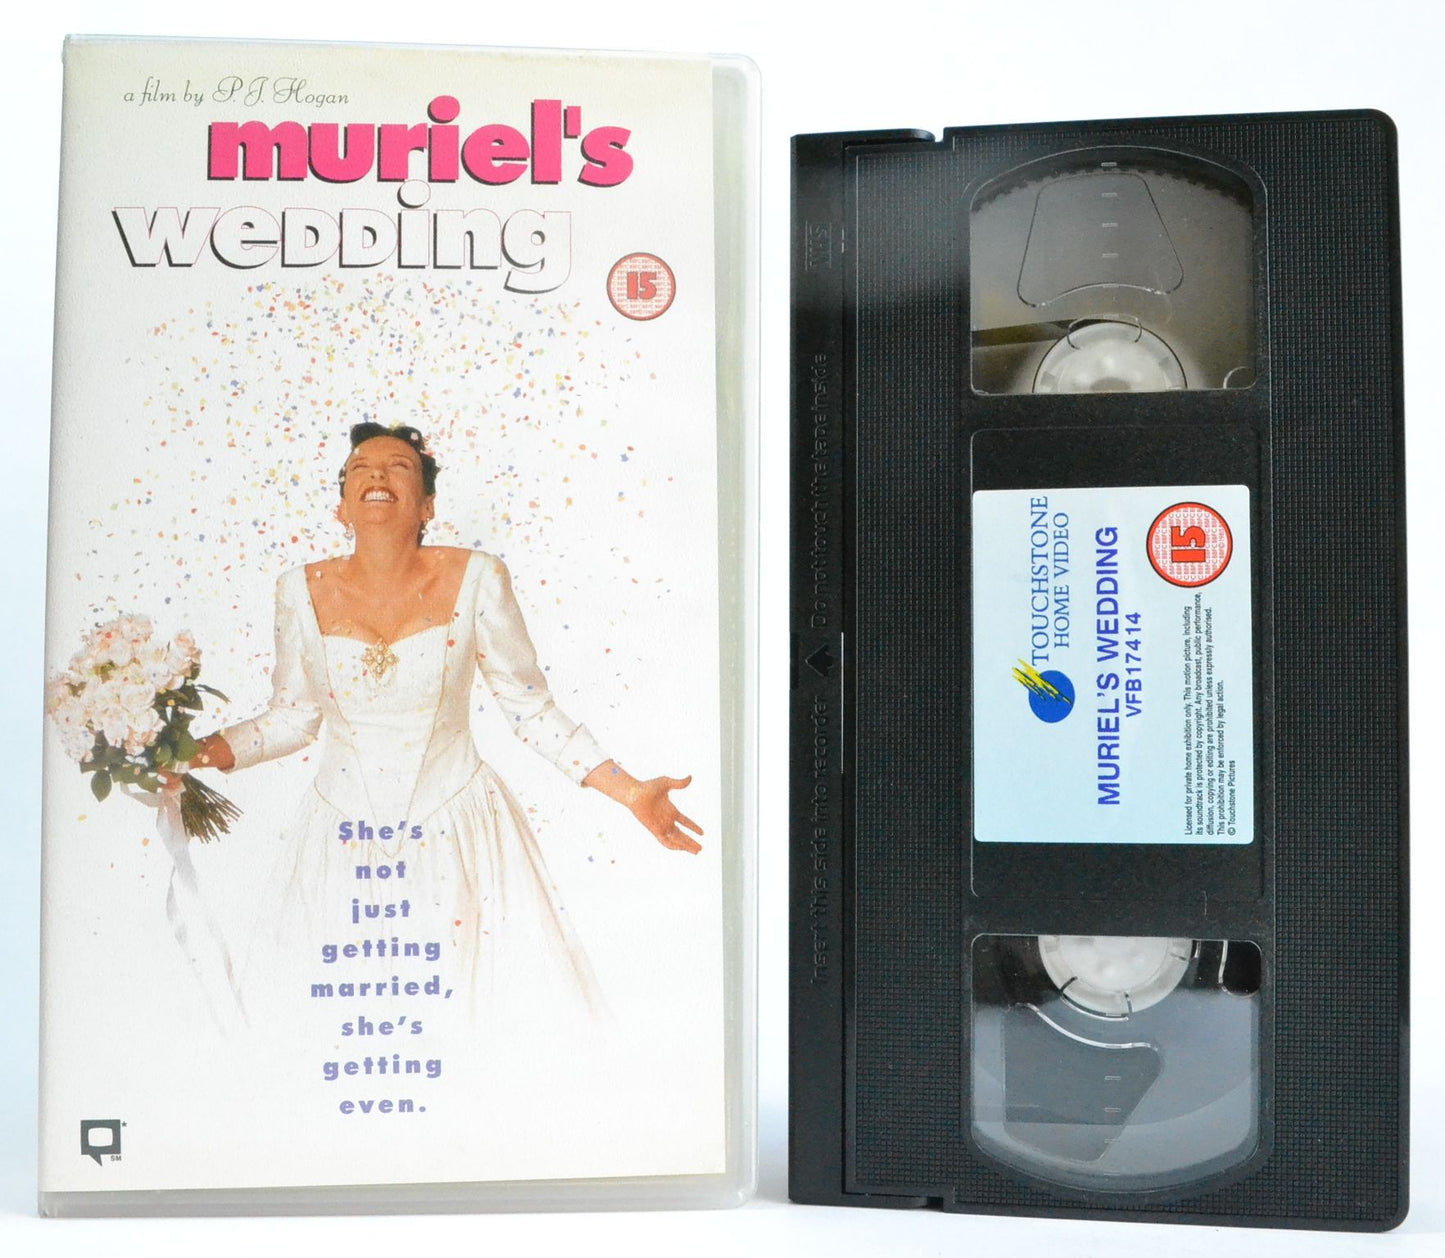 Muriel’s Wedding: Toni Collette - Romantic Marriage Comedy - P.J.Hogan (1994) VHS-